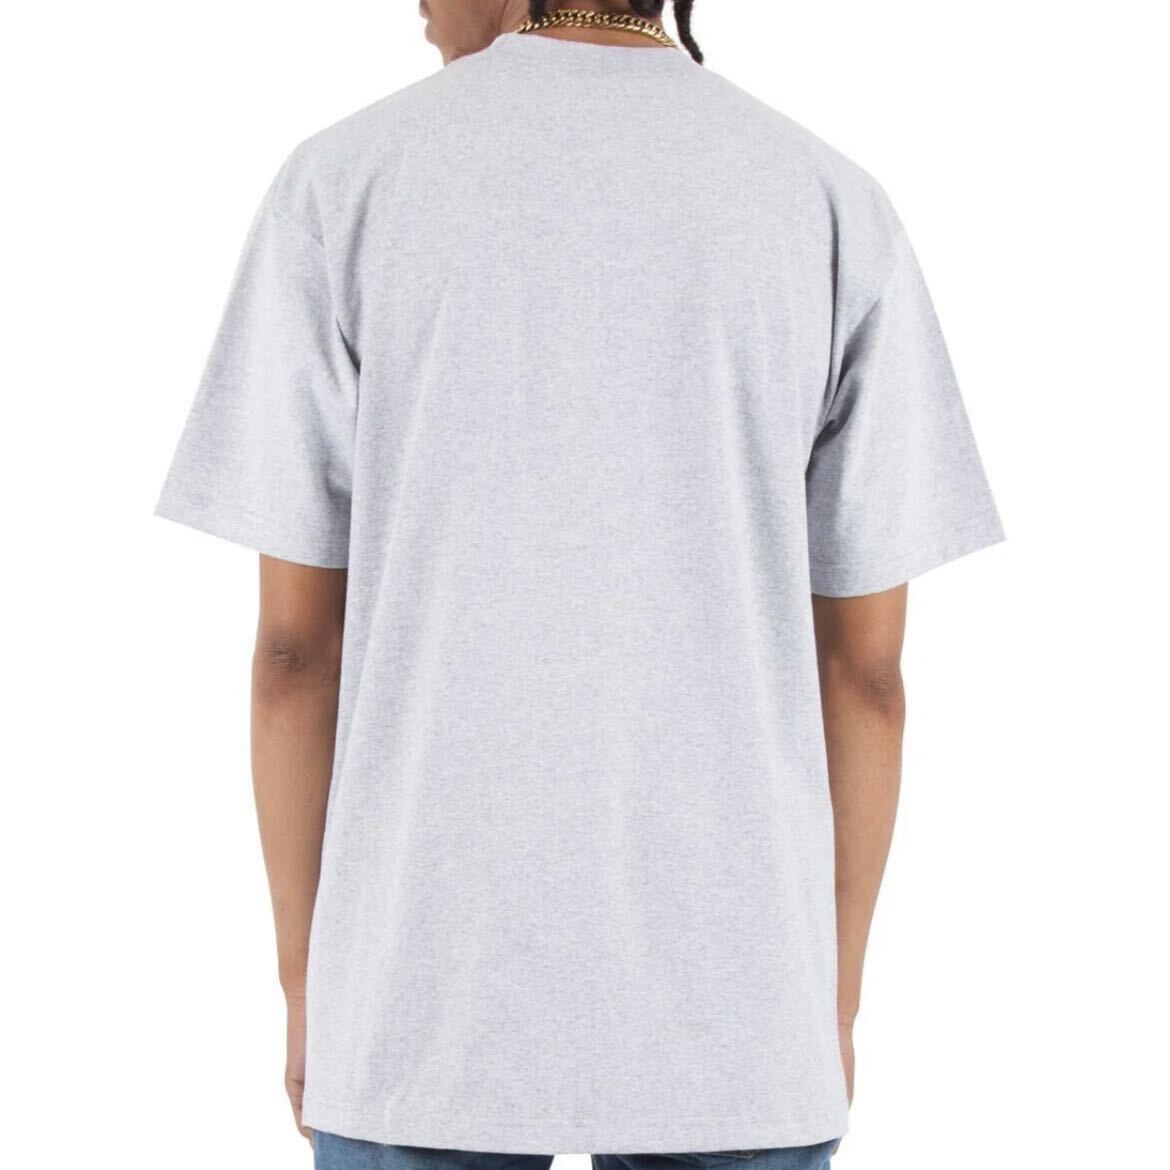 新品未使用 シャカウェア 7.5oz ヘビーウエイト 無地 クルーネック 半袖Tシャツ グレー 2XLサイズ SHAKAWEAR